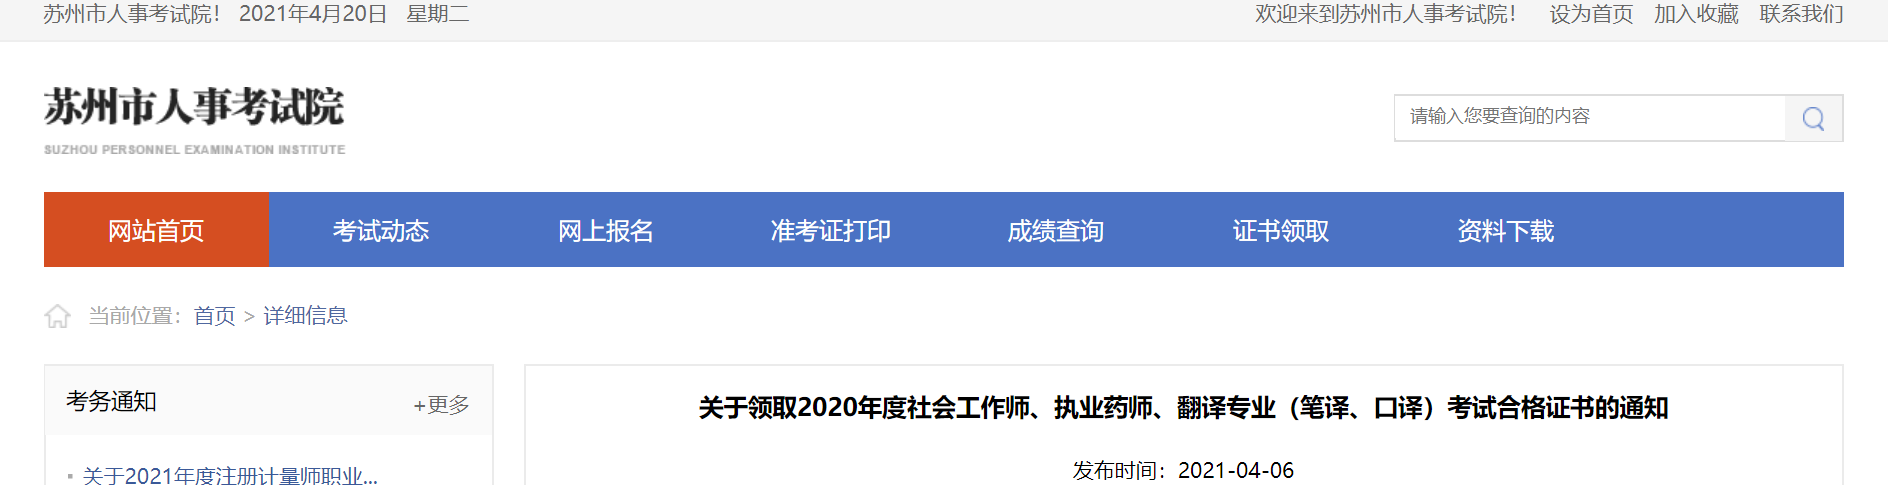 2020年江苏苏州社会工作师证书领取通知